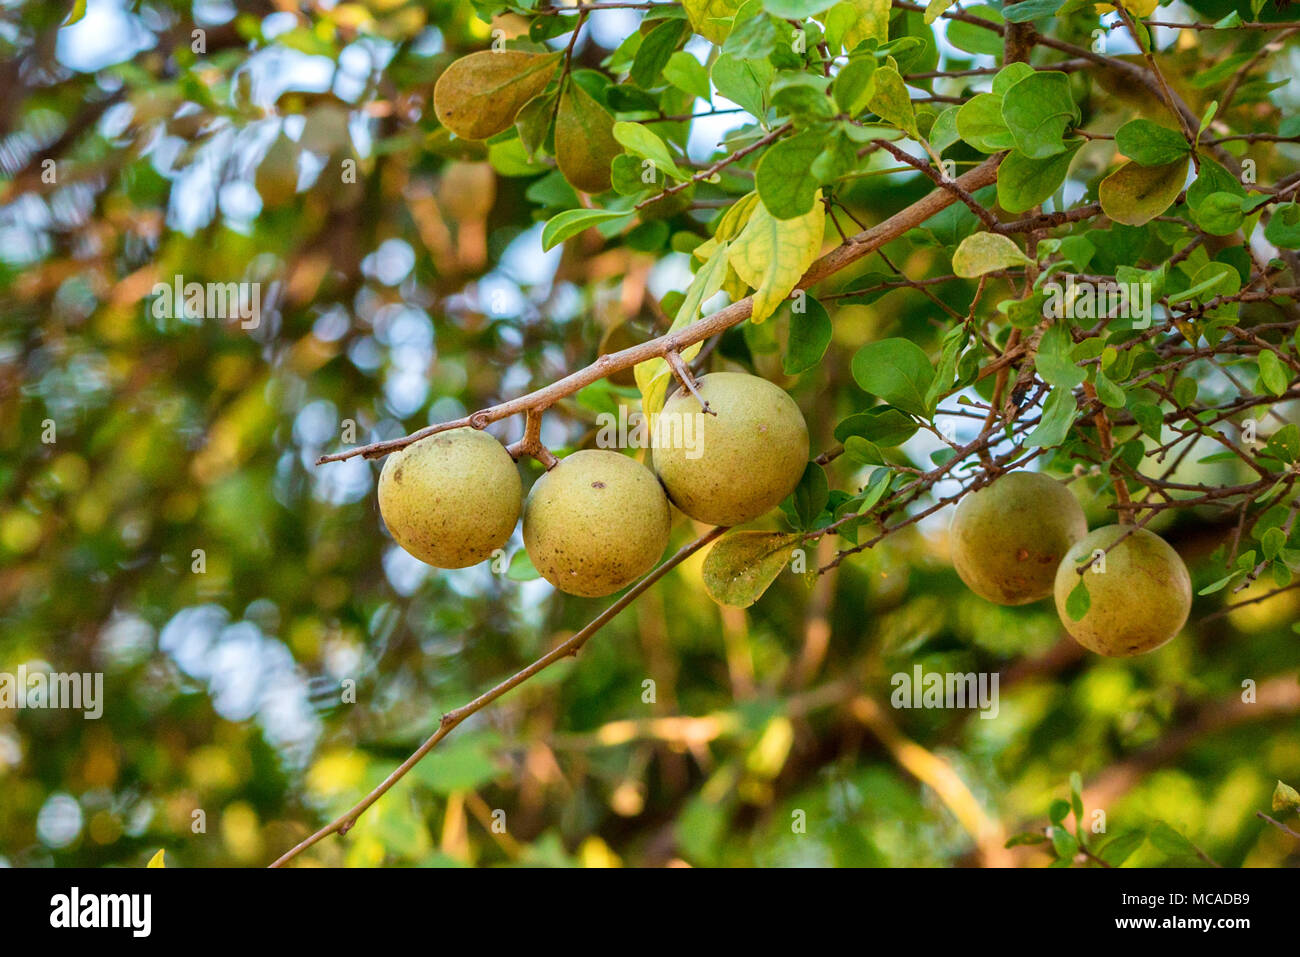 Limonia acidissima tree with fruit Stock Photo